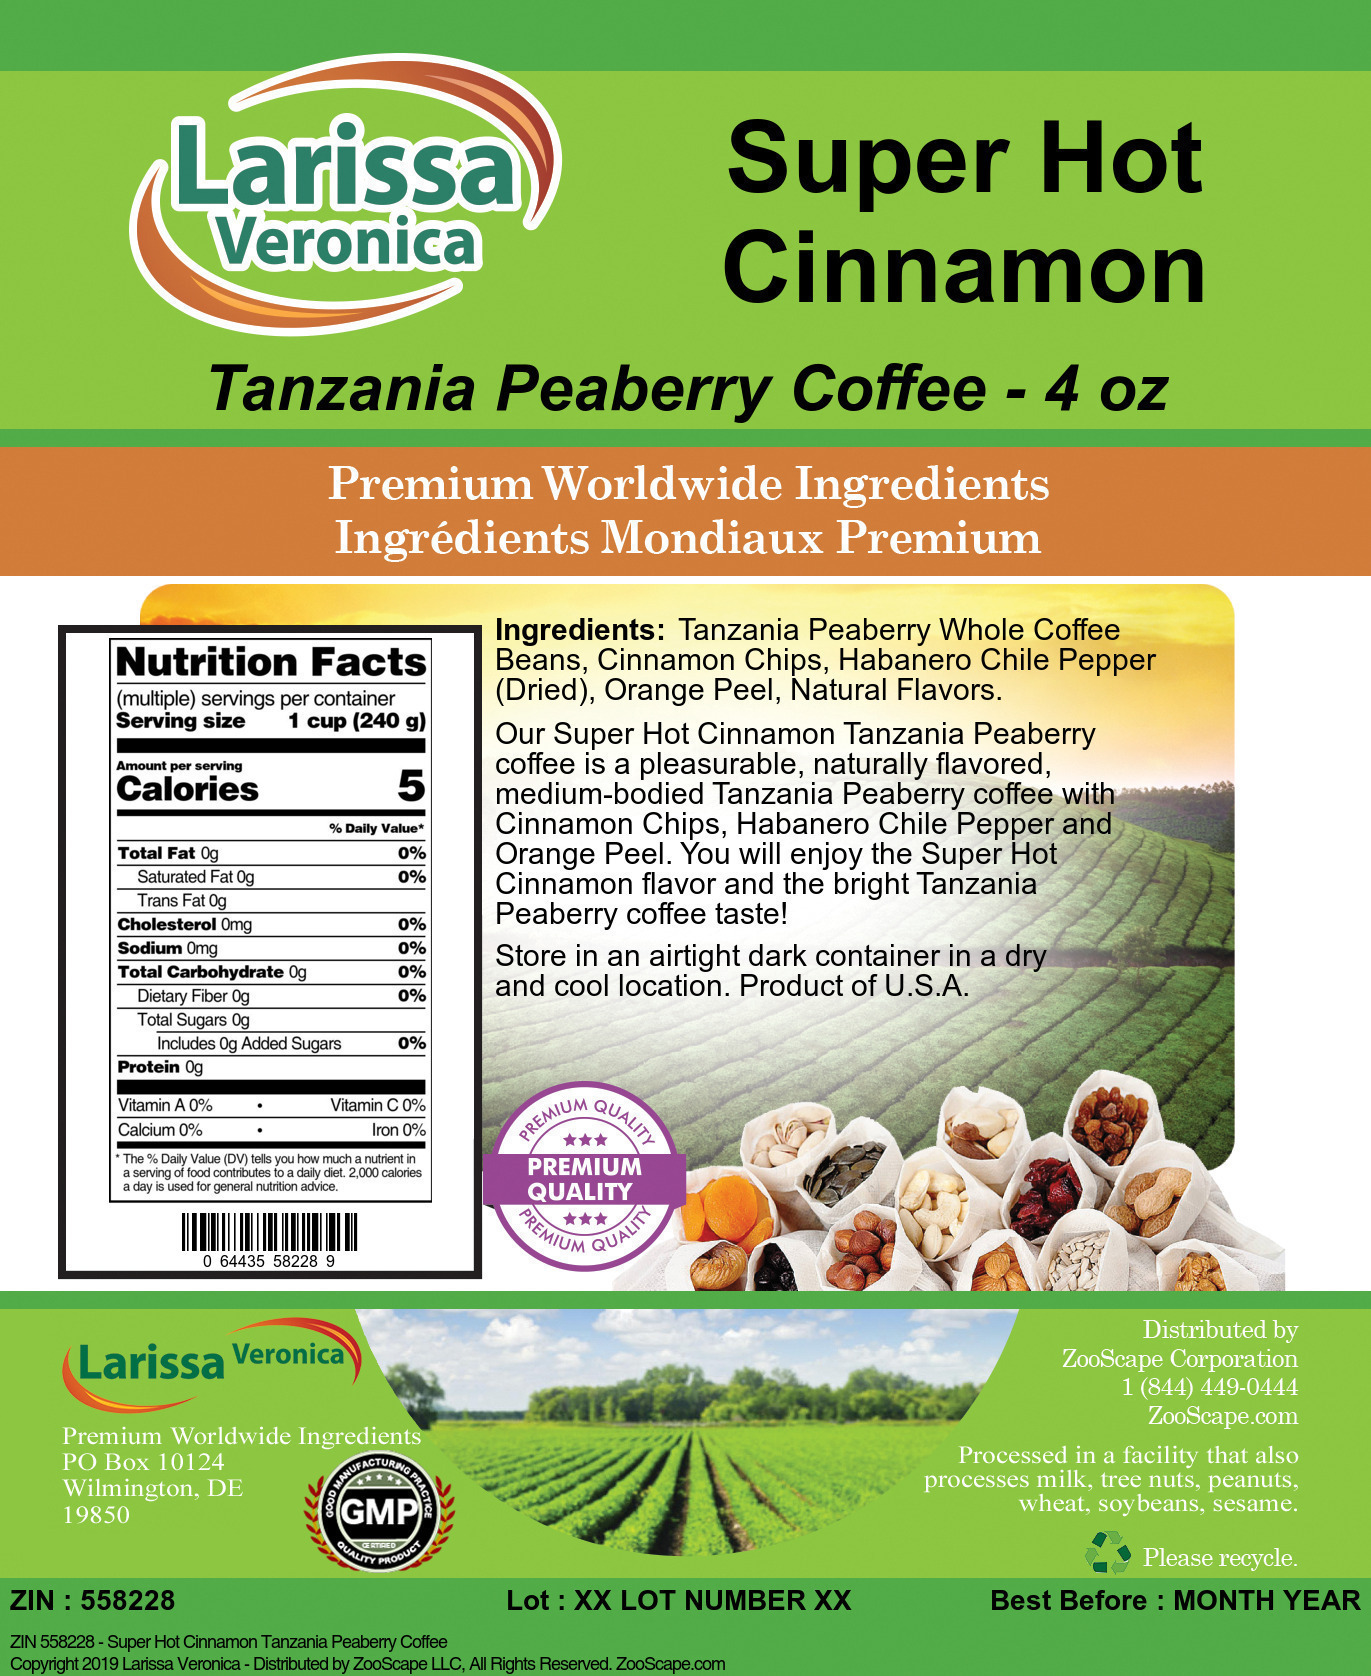 Super Hot Cinnamon Tanzania Peaberry Coffee - Label